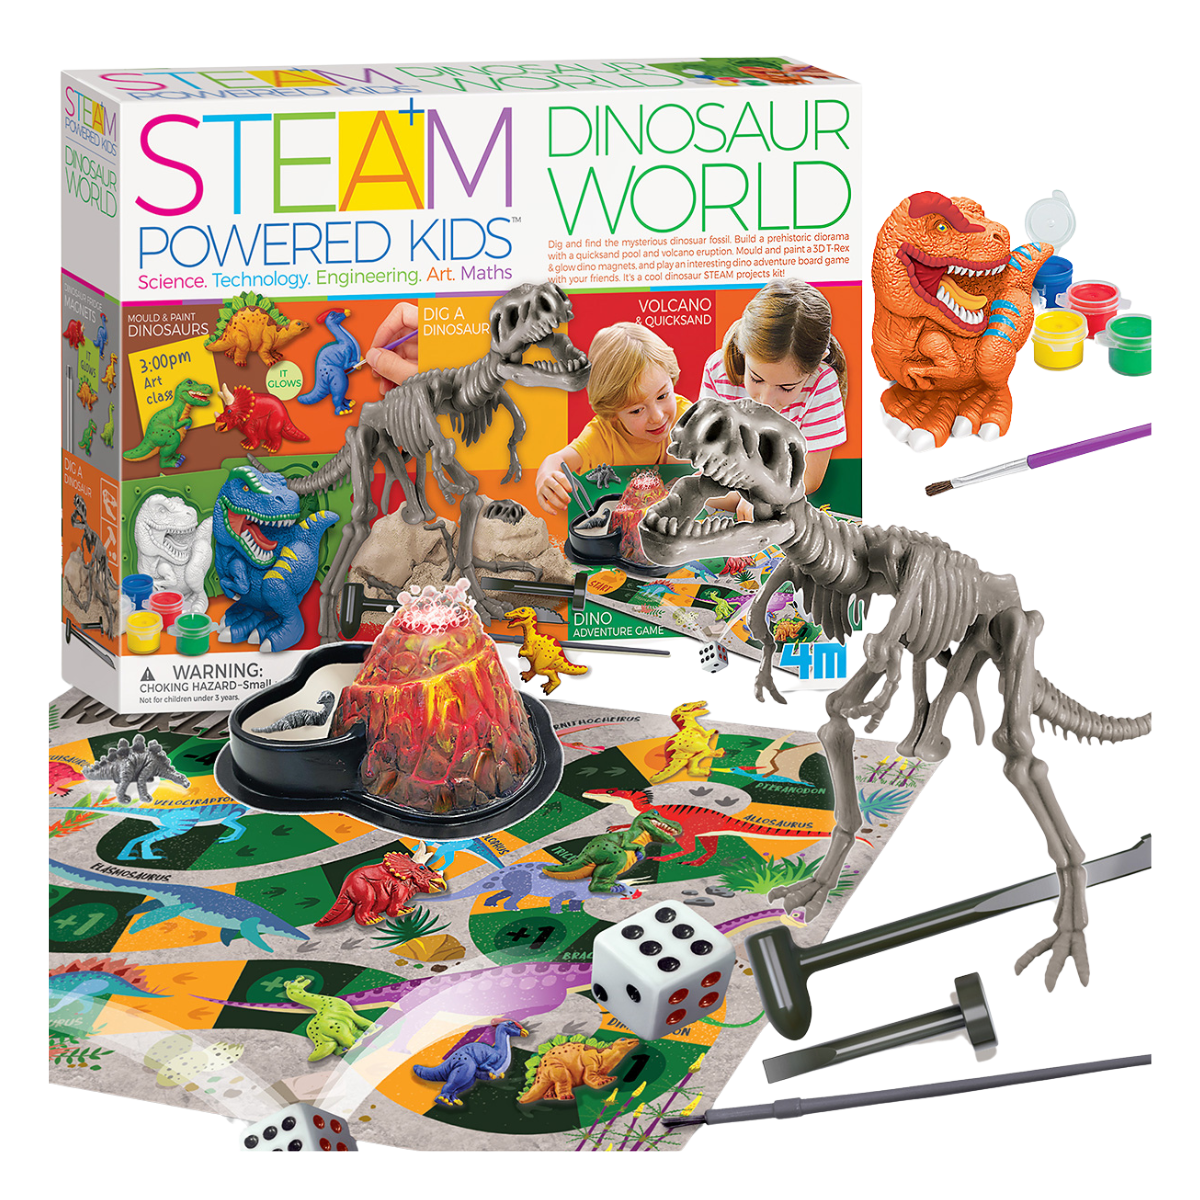 Dinosaur World Steam